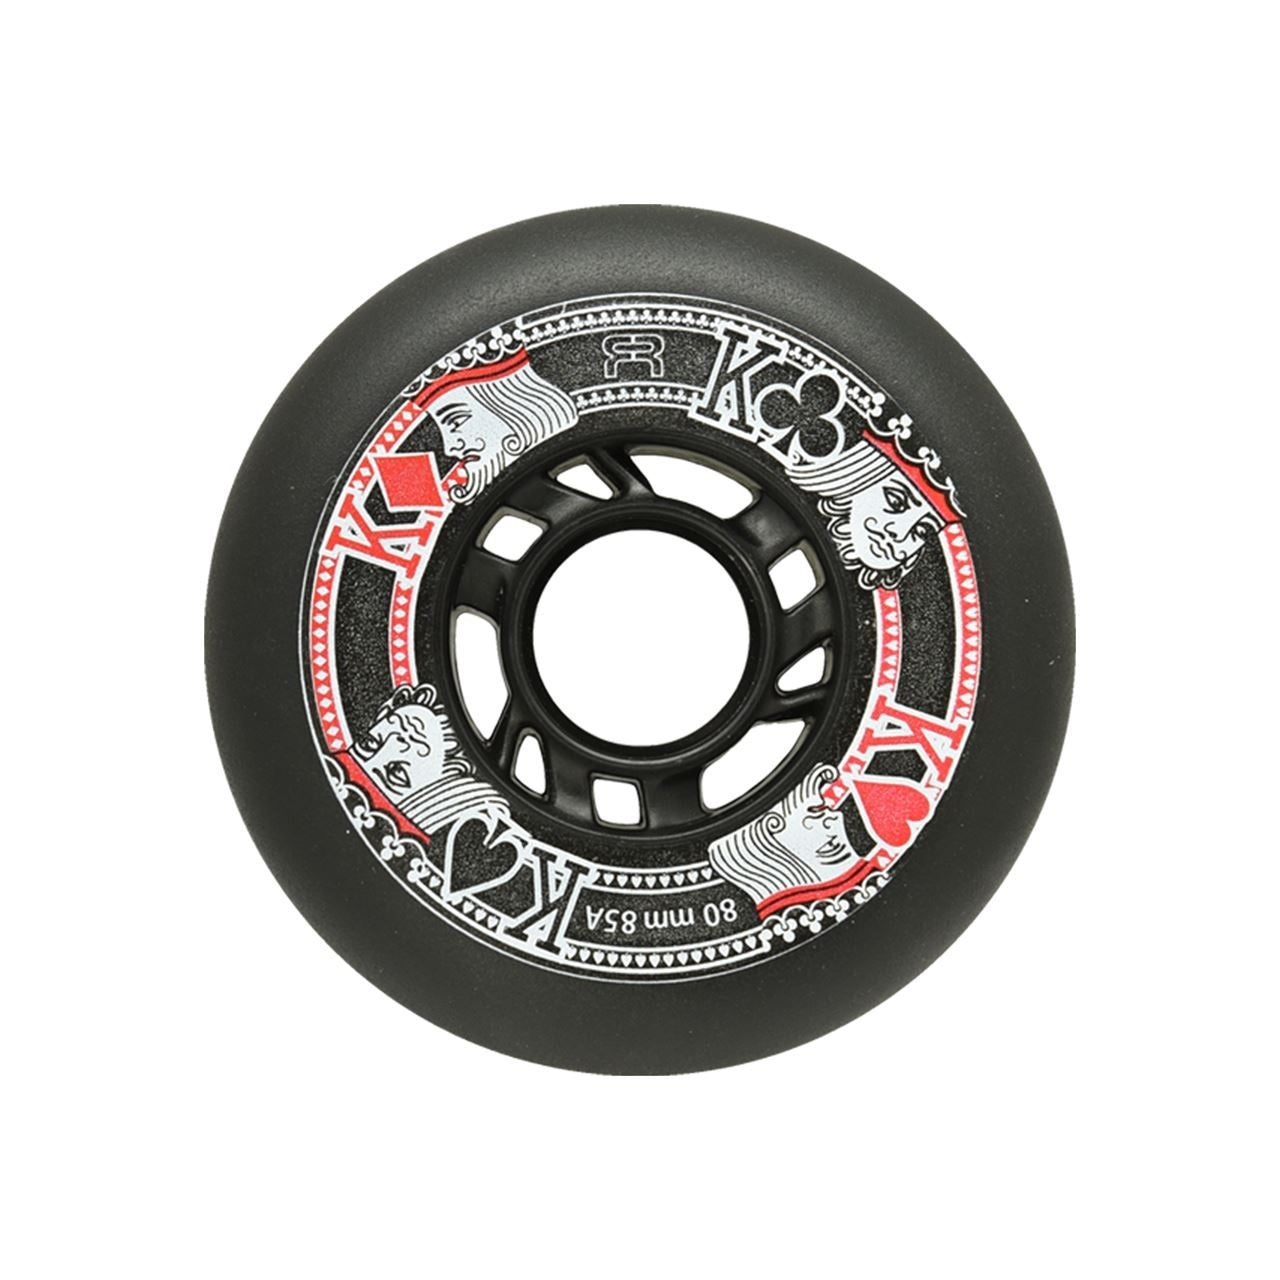 FR Street Kings Inline Skate Wheels 85a - Black 4 Pack